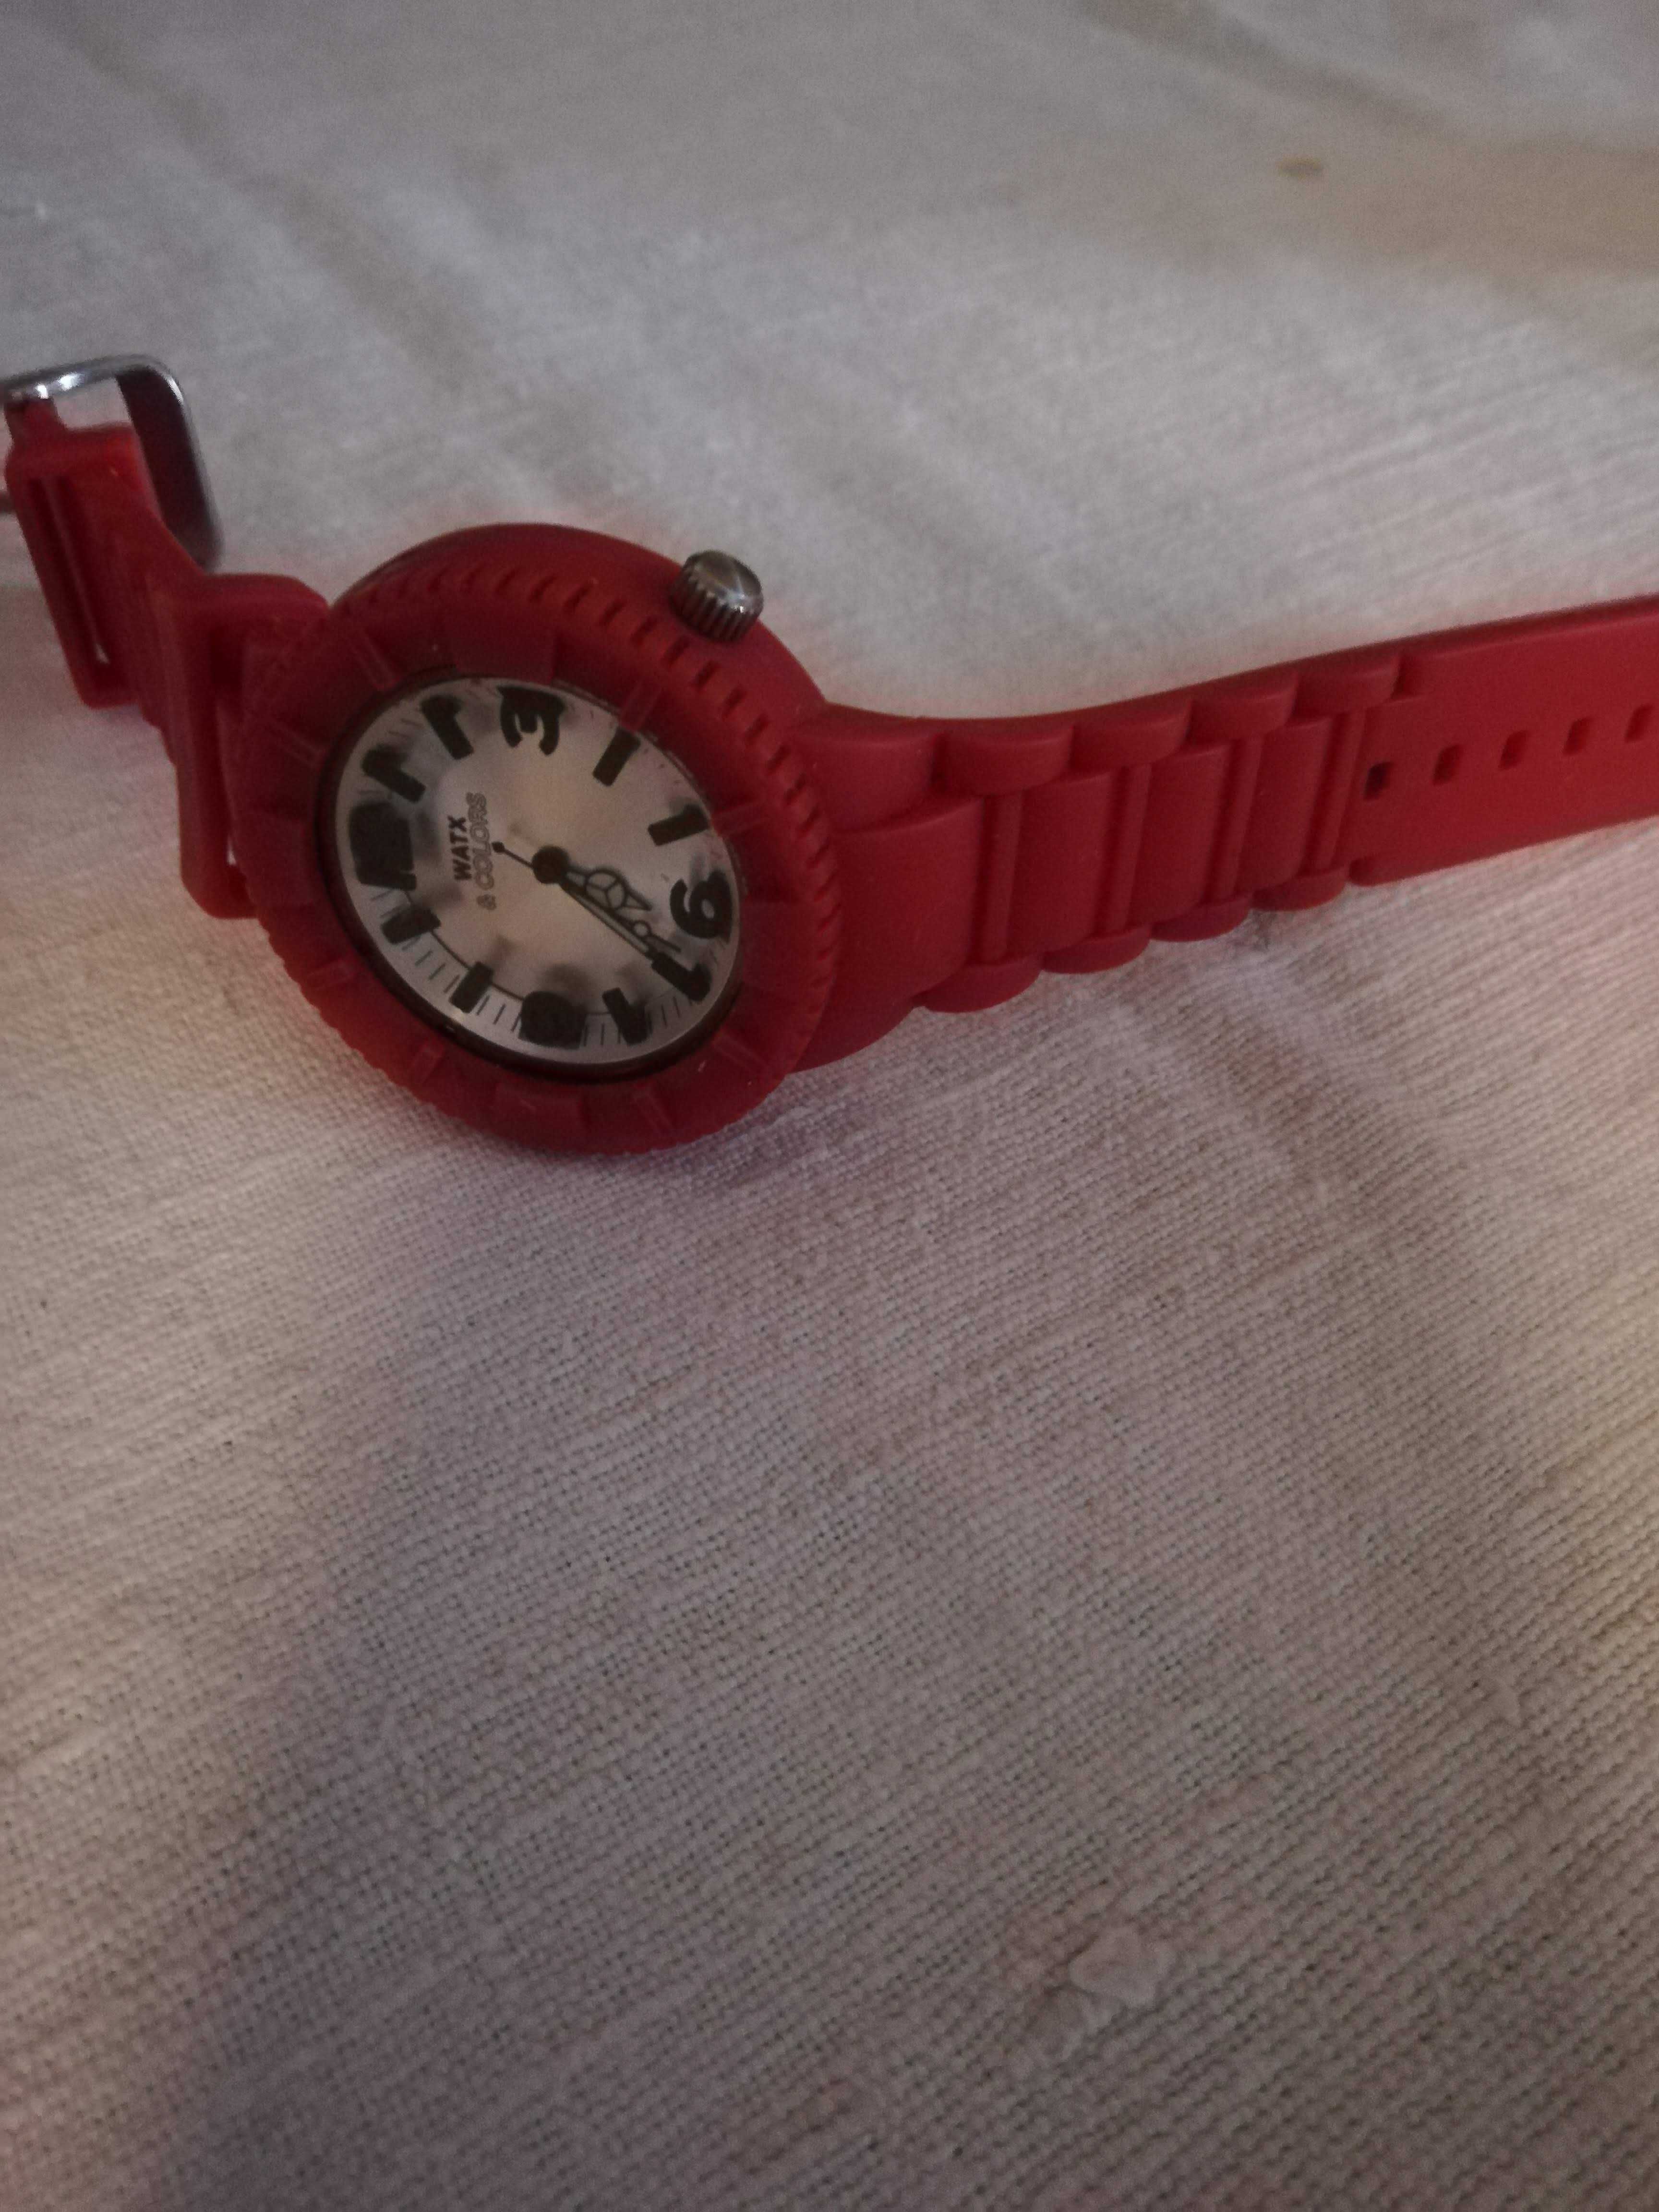 Relógio da marca Watx & Colors vermelho